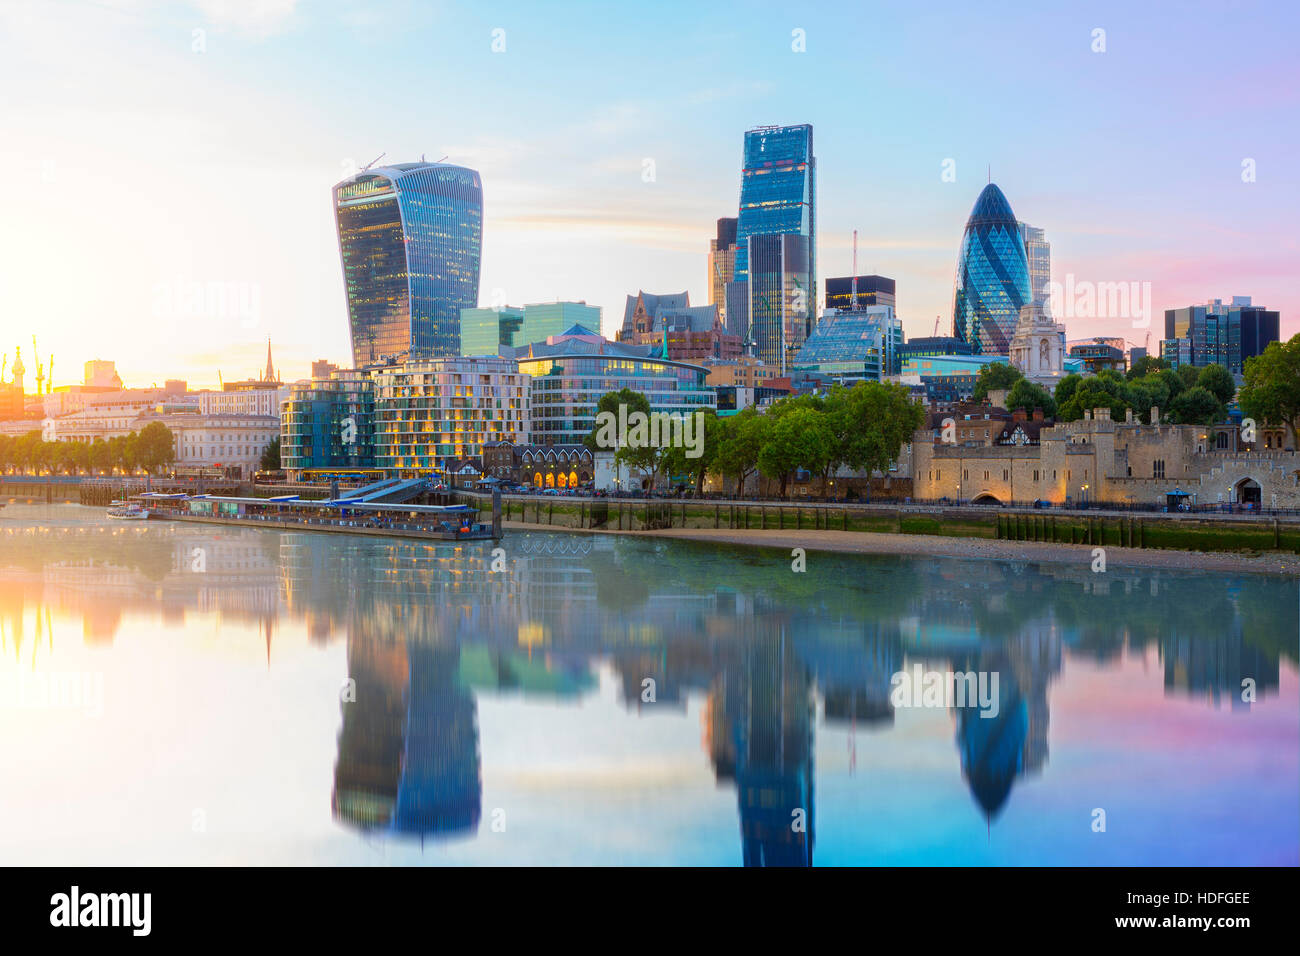 Ville de London, la réflexion de la construction sur la rivière Thames Banque D'Images